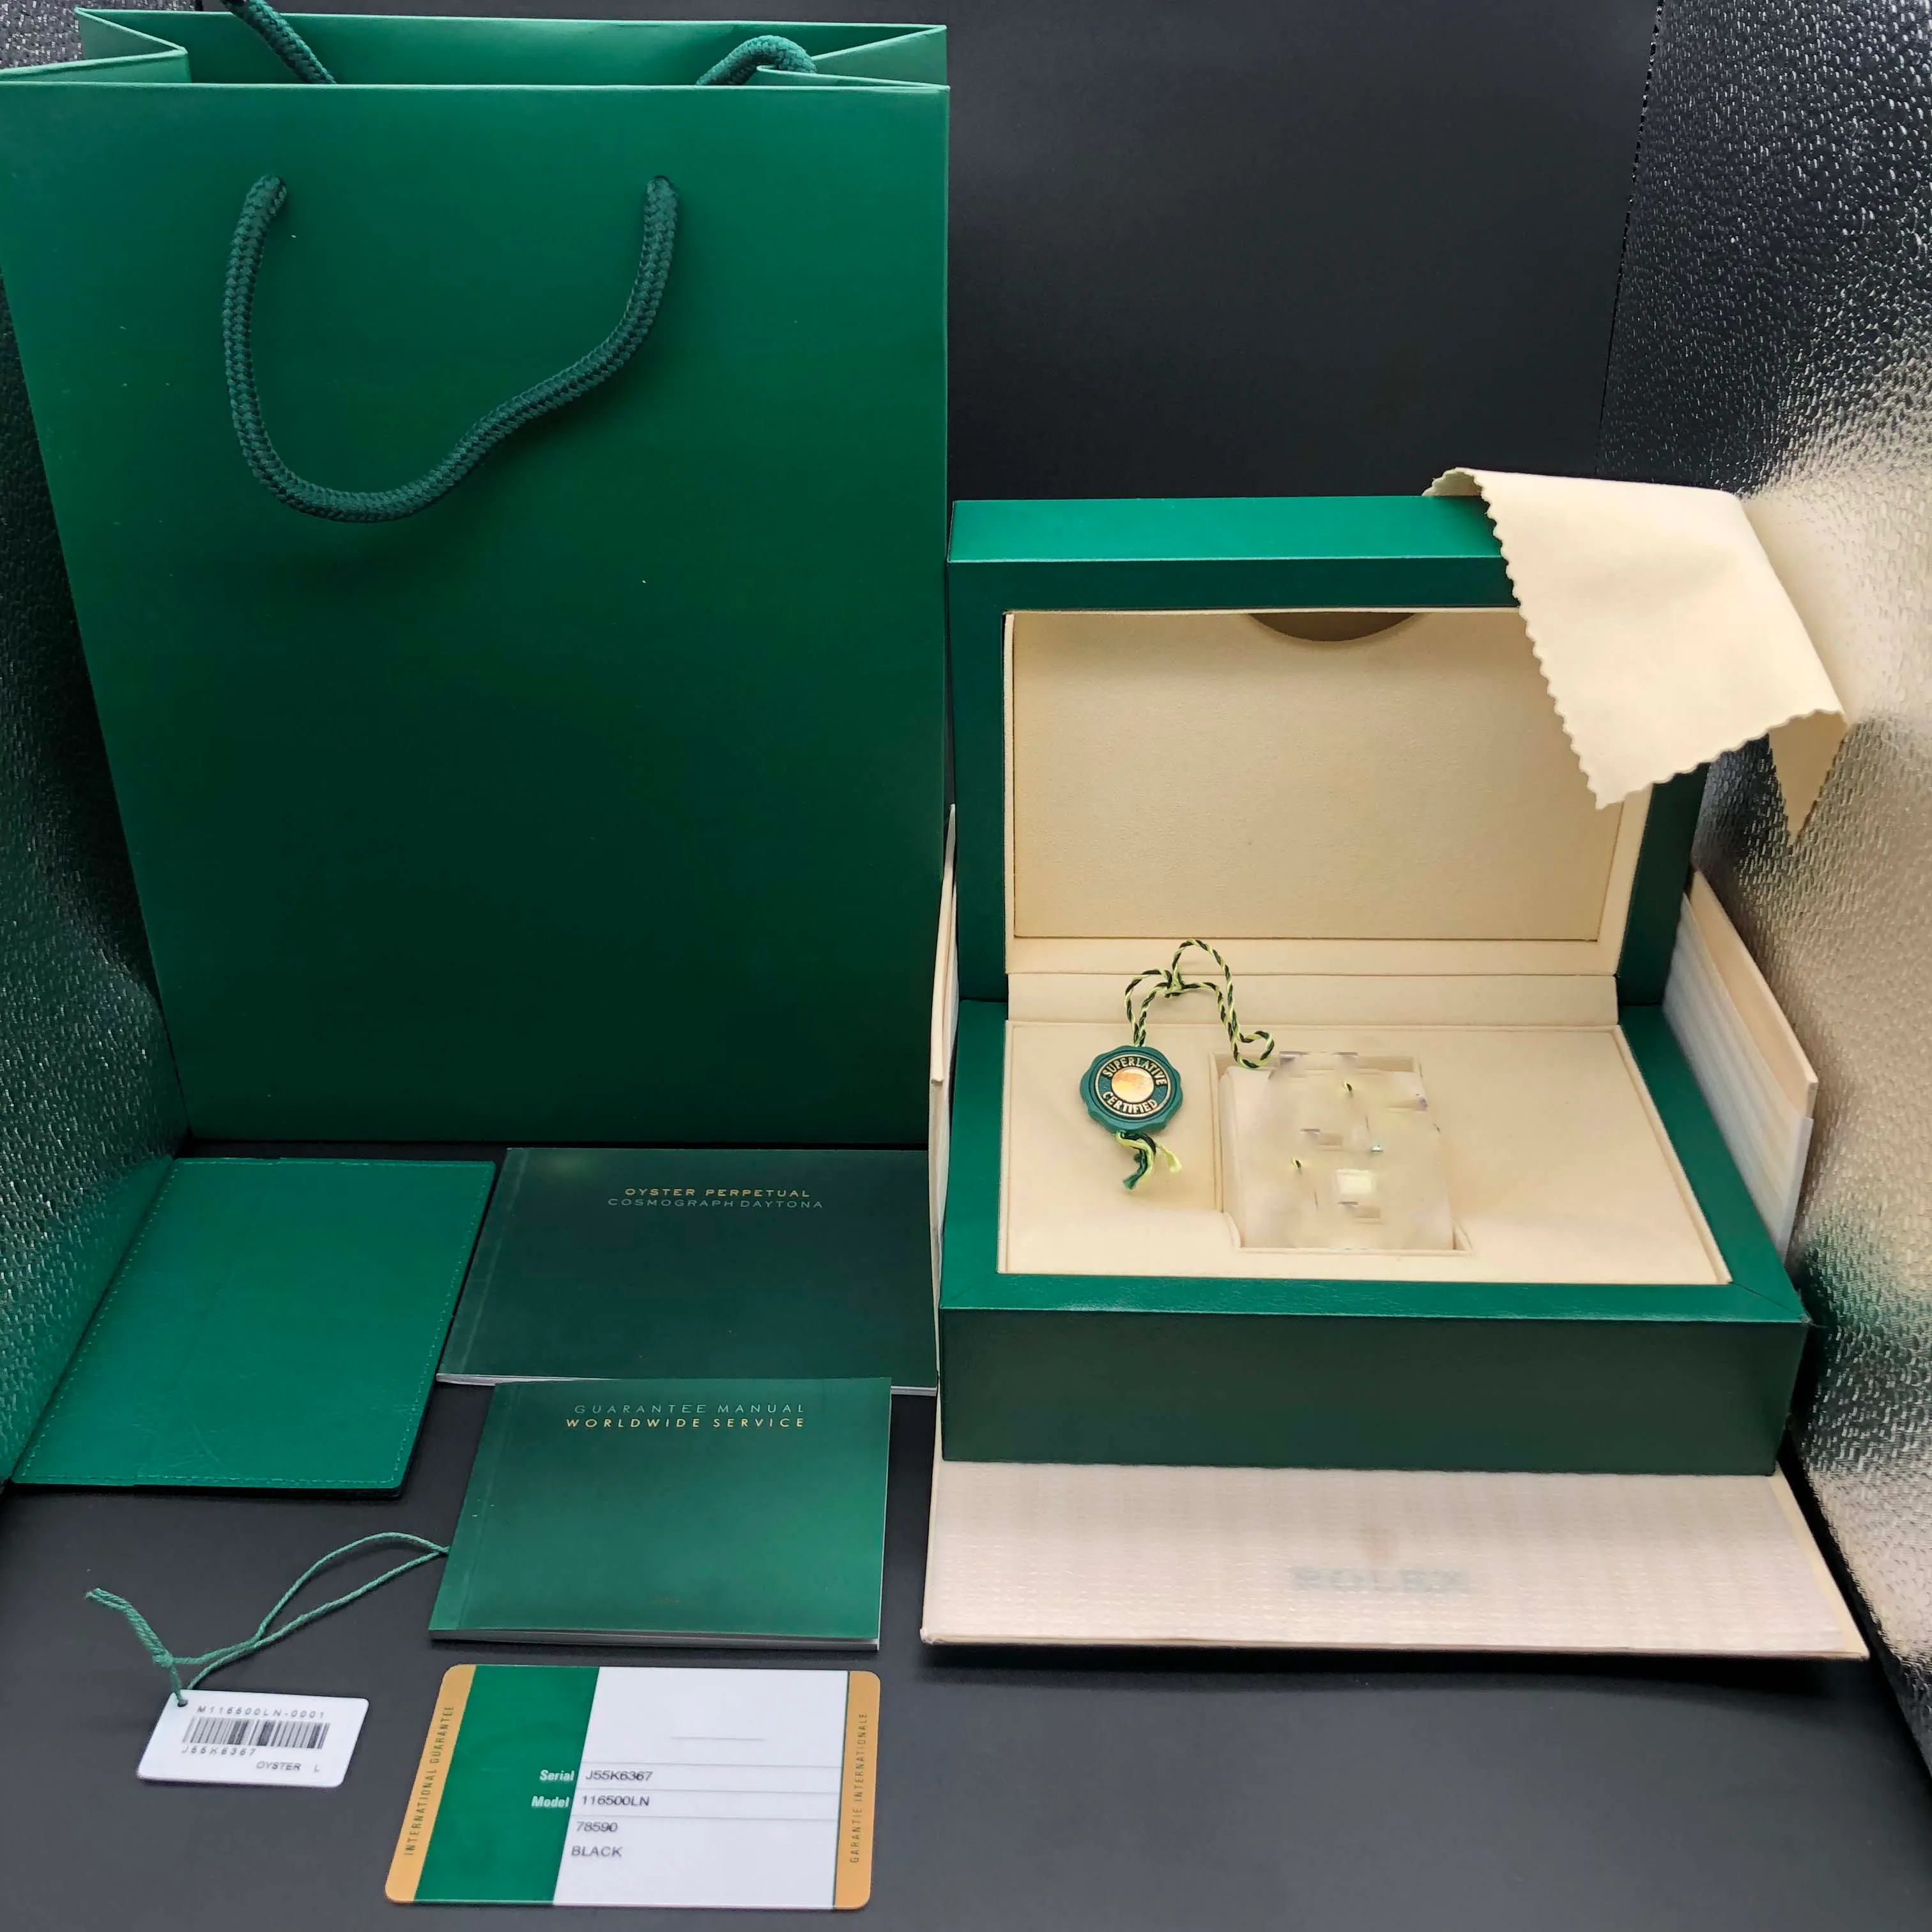 원래 올바른 일치하는 논문 보안 카드 선물 가방 롤렉스 상자에 대 한 녹색 나무 시계 상자 소책자 시계 인쇄 사용자 정의 카드